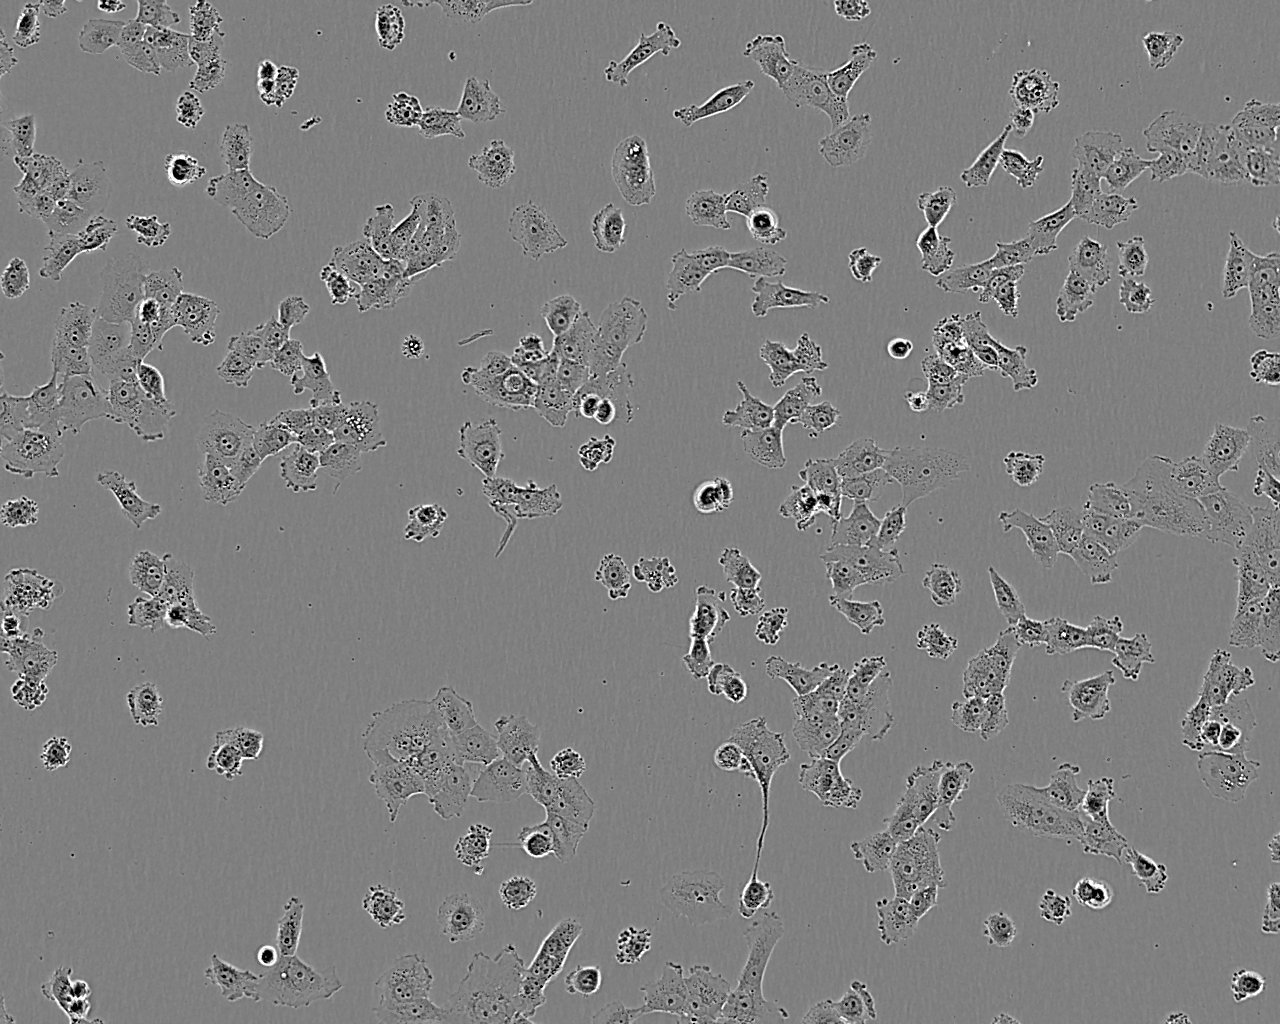 NCI-H2228 Cells|人非小细胞肺癌细胞系